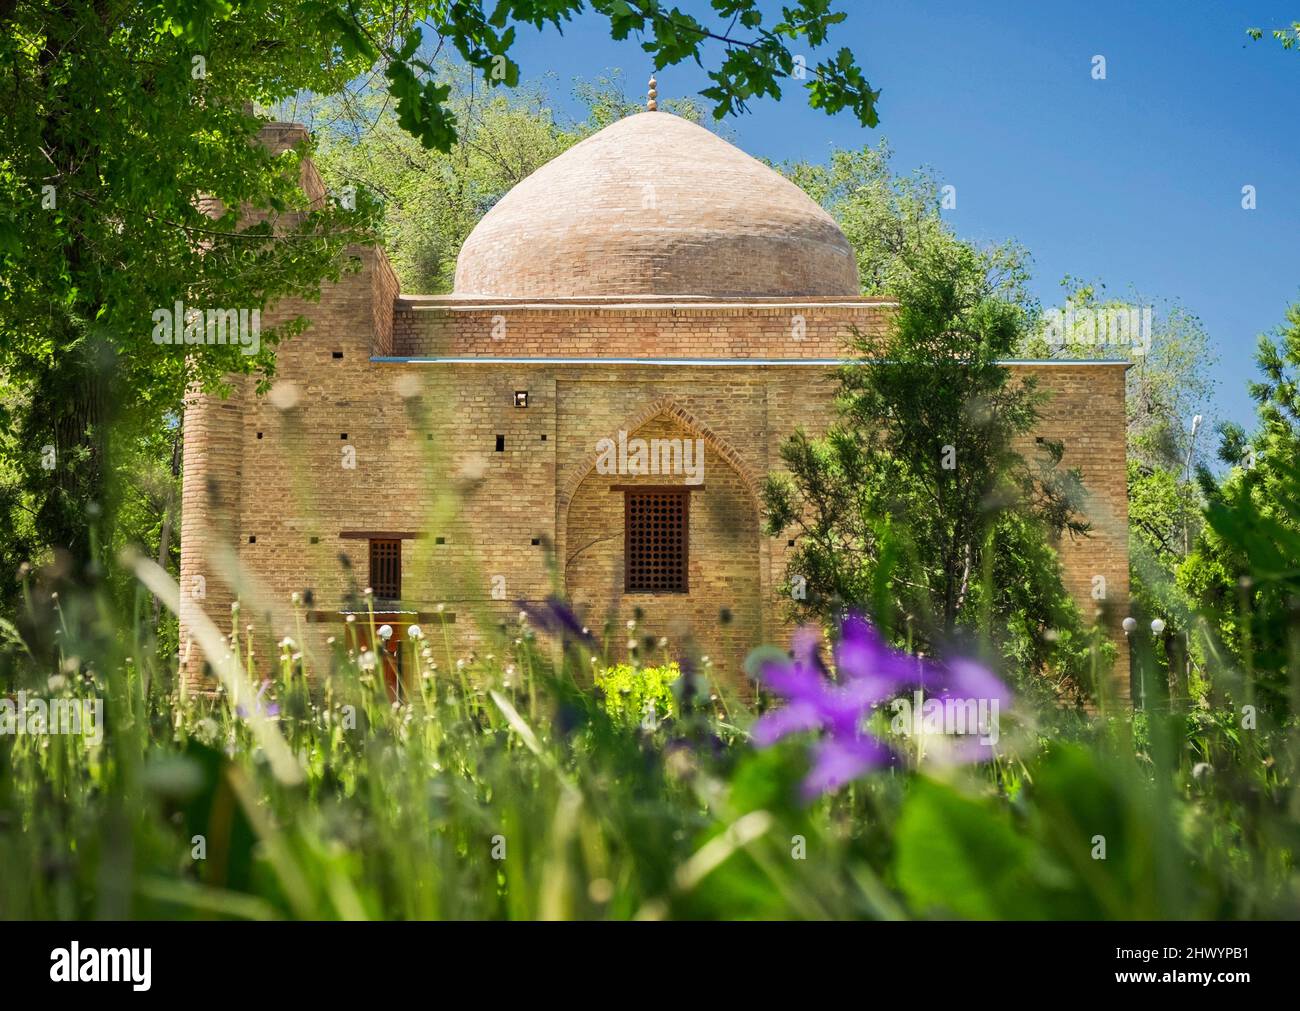 Das alte Denkmal der Architektur des 11.. Jahrhunderts, Mausoleum von Karakhan, Taraz-Stadt, Kasachstan. Stockfoto